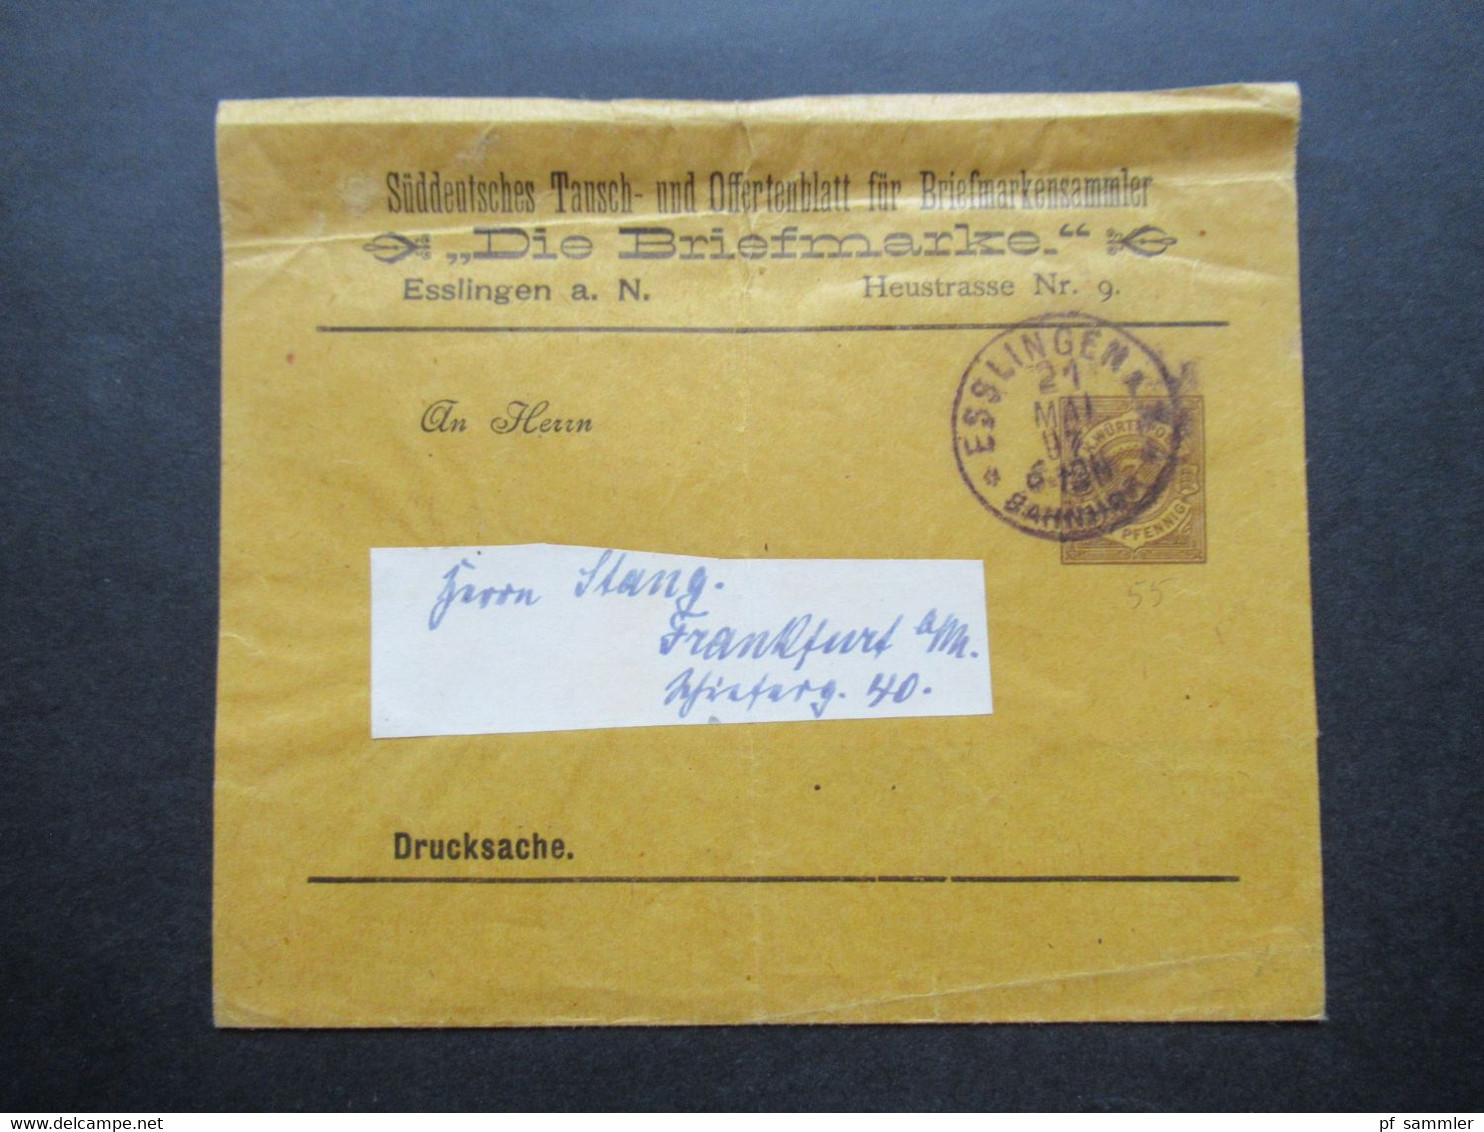 Württemberg 1897 PP Privatganzsache Streifband Süddeutsches Tausch U.Offertenblatt Für Briefmarkensammler Die Briefmarke - Entiers Postaux